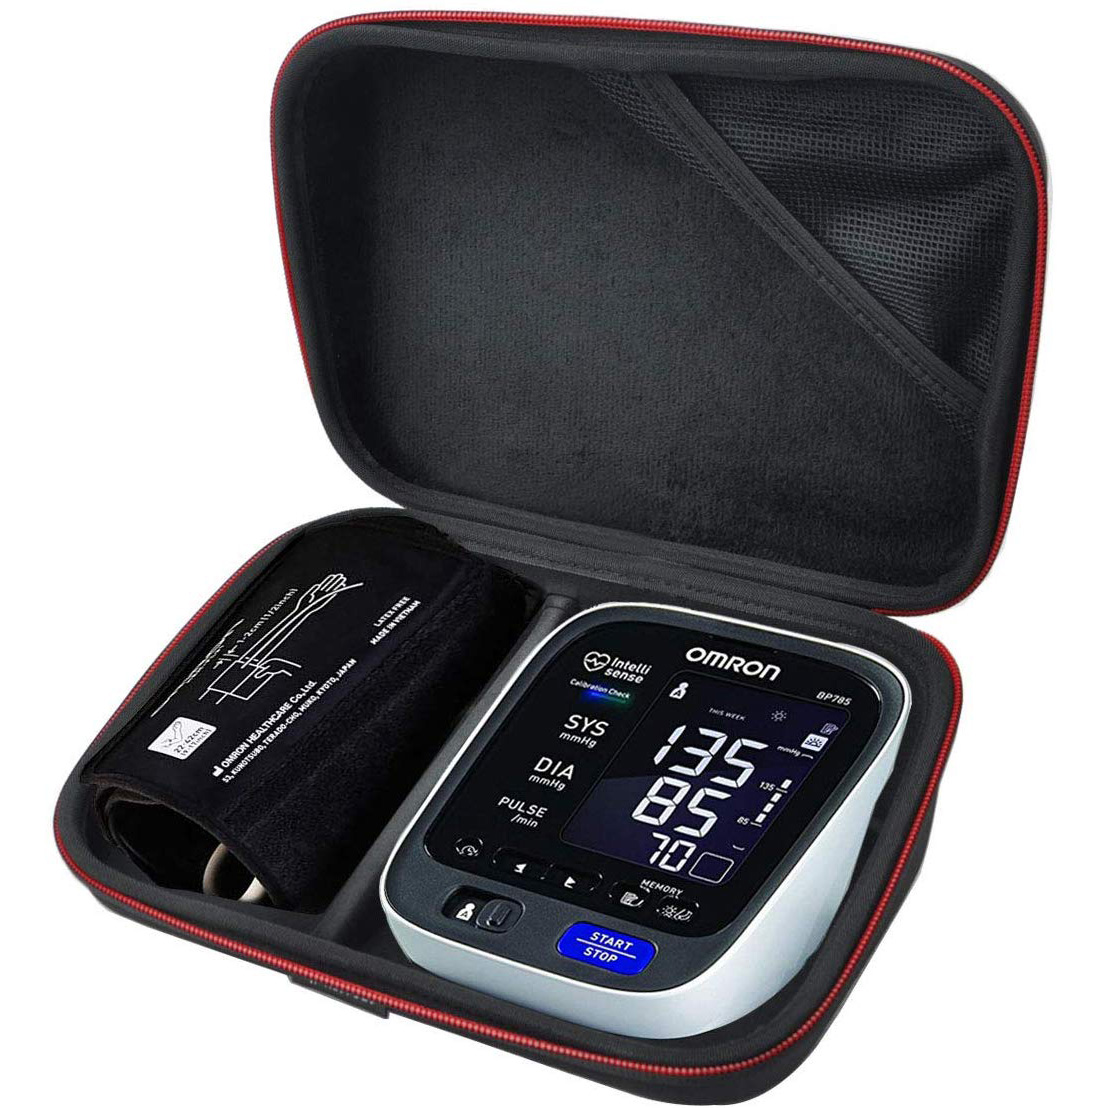 Nyeoe e Tloaelehileng ea ho Tsamaea ka thata ea Eva For Digital Blood Pressure Machine Medical Case For Blood Pressure Monitor Meter